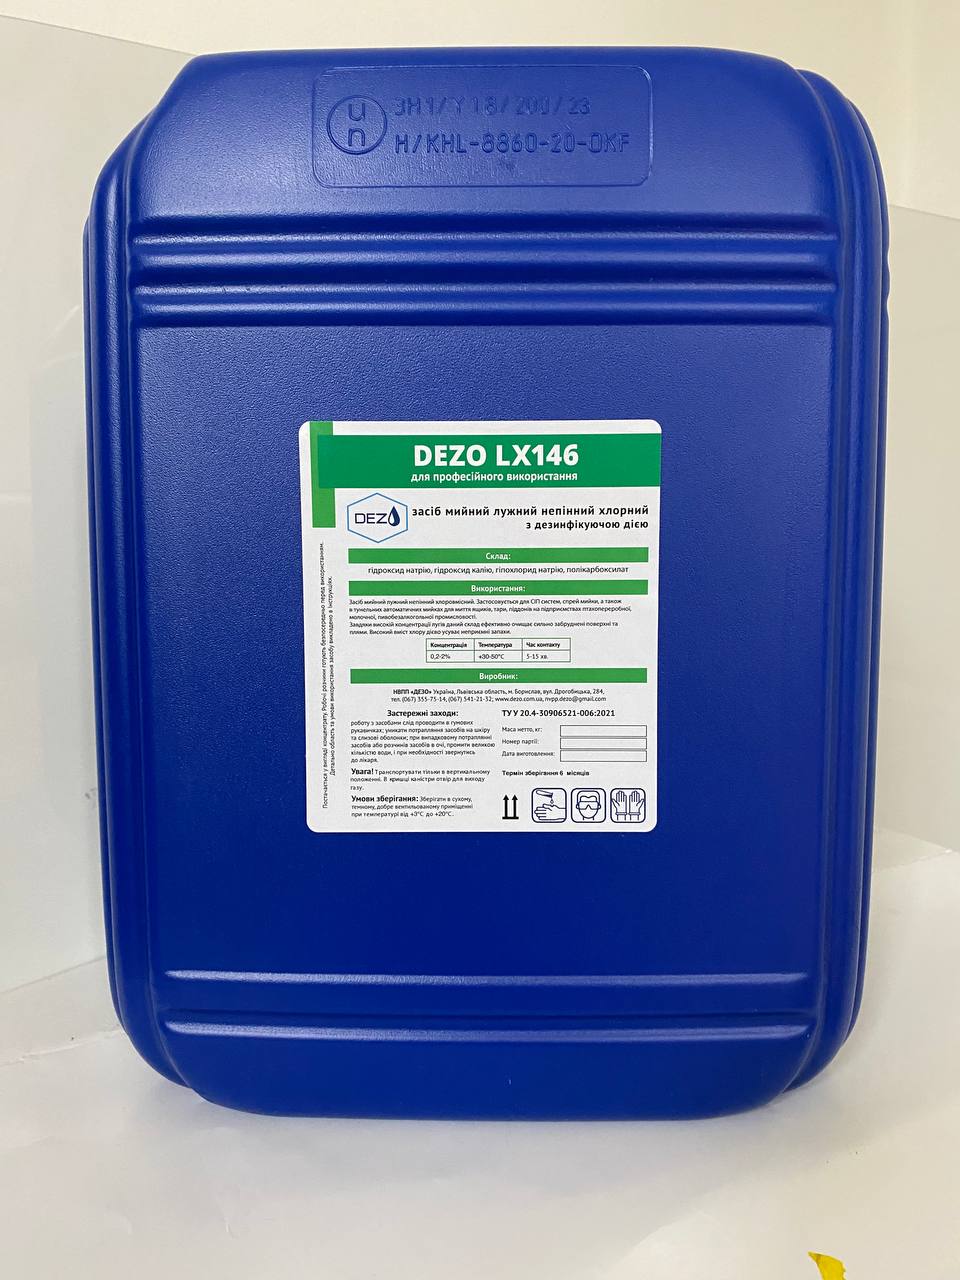 Засіб мийний лужний непінний хлорний  з дезінфікуючою дією DEZO LX146, 12 кг